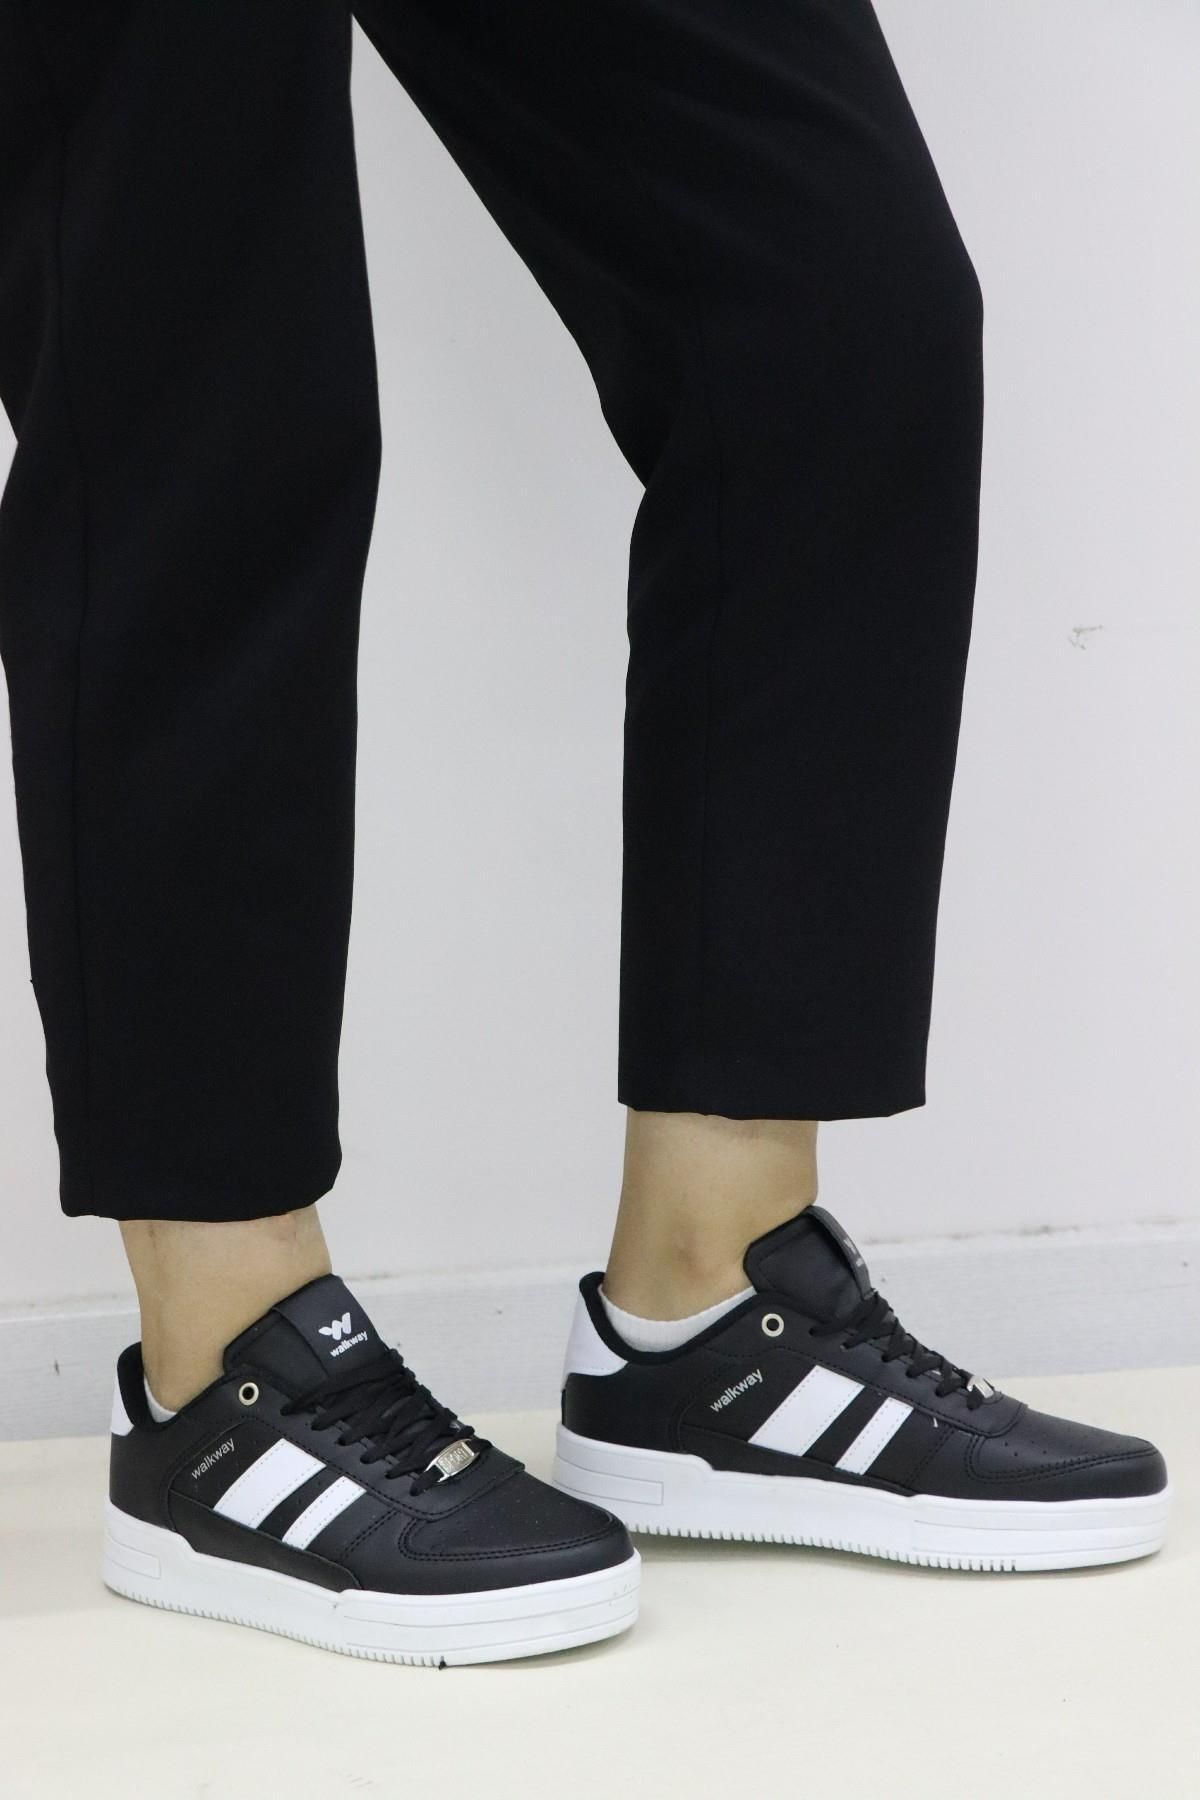 WALKWAY Sandy G Siyah-beyaz Kadın Spor Ayakkabı